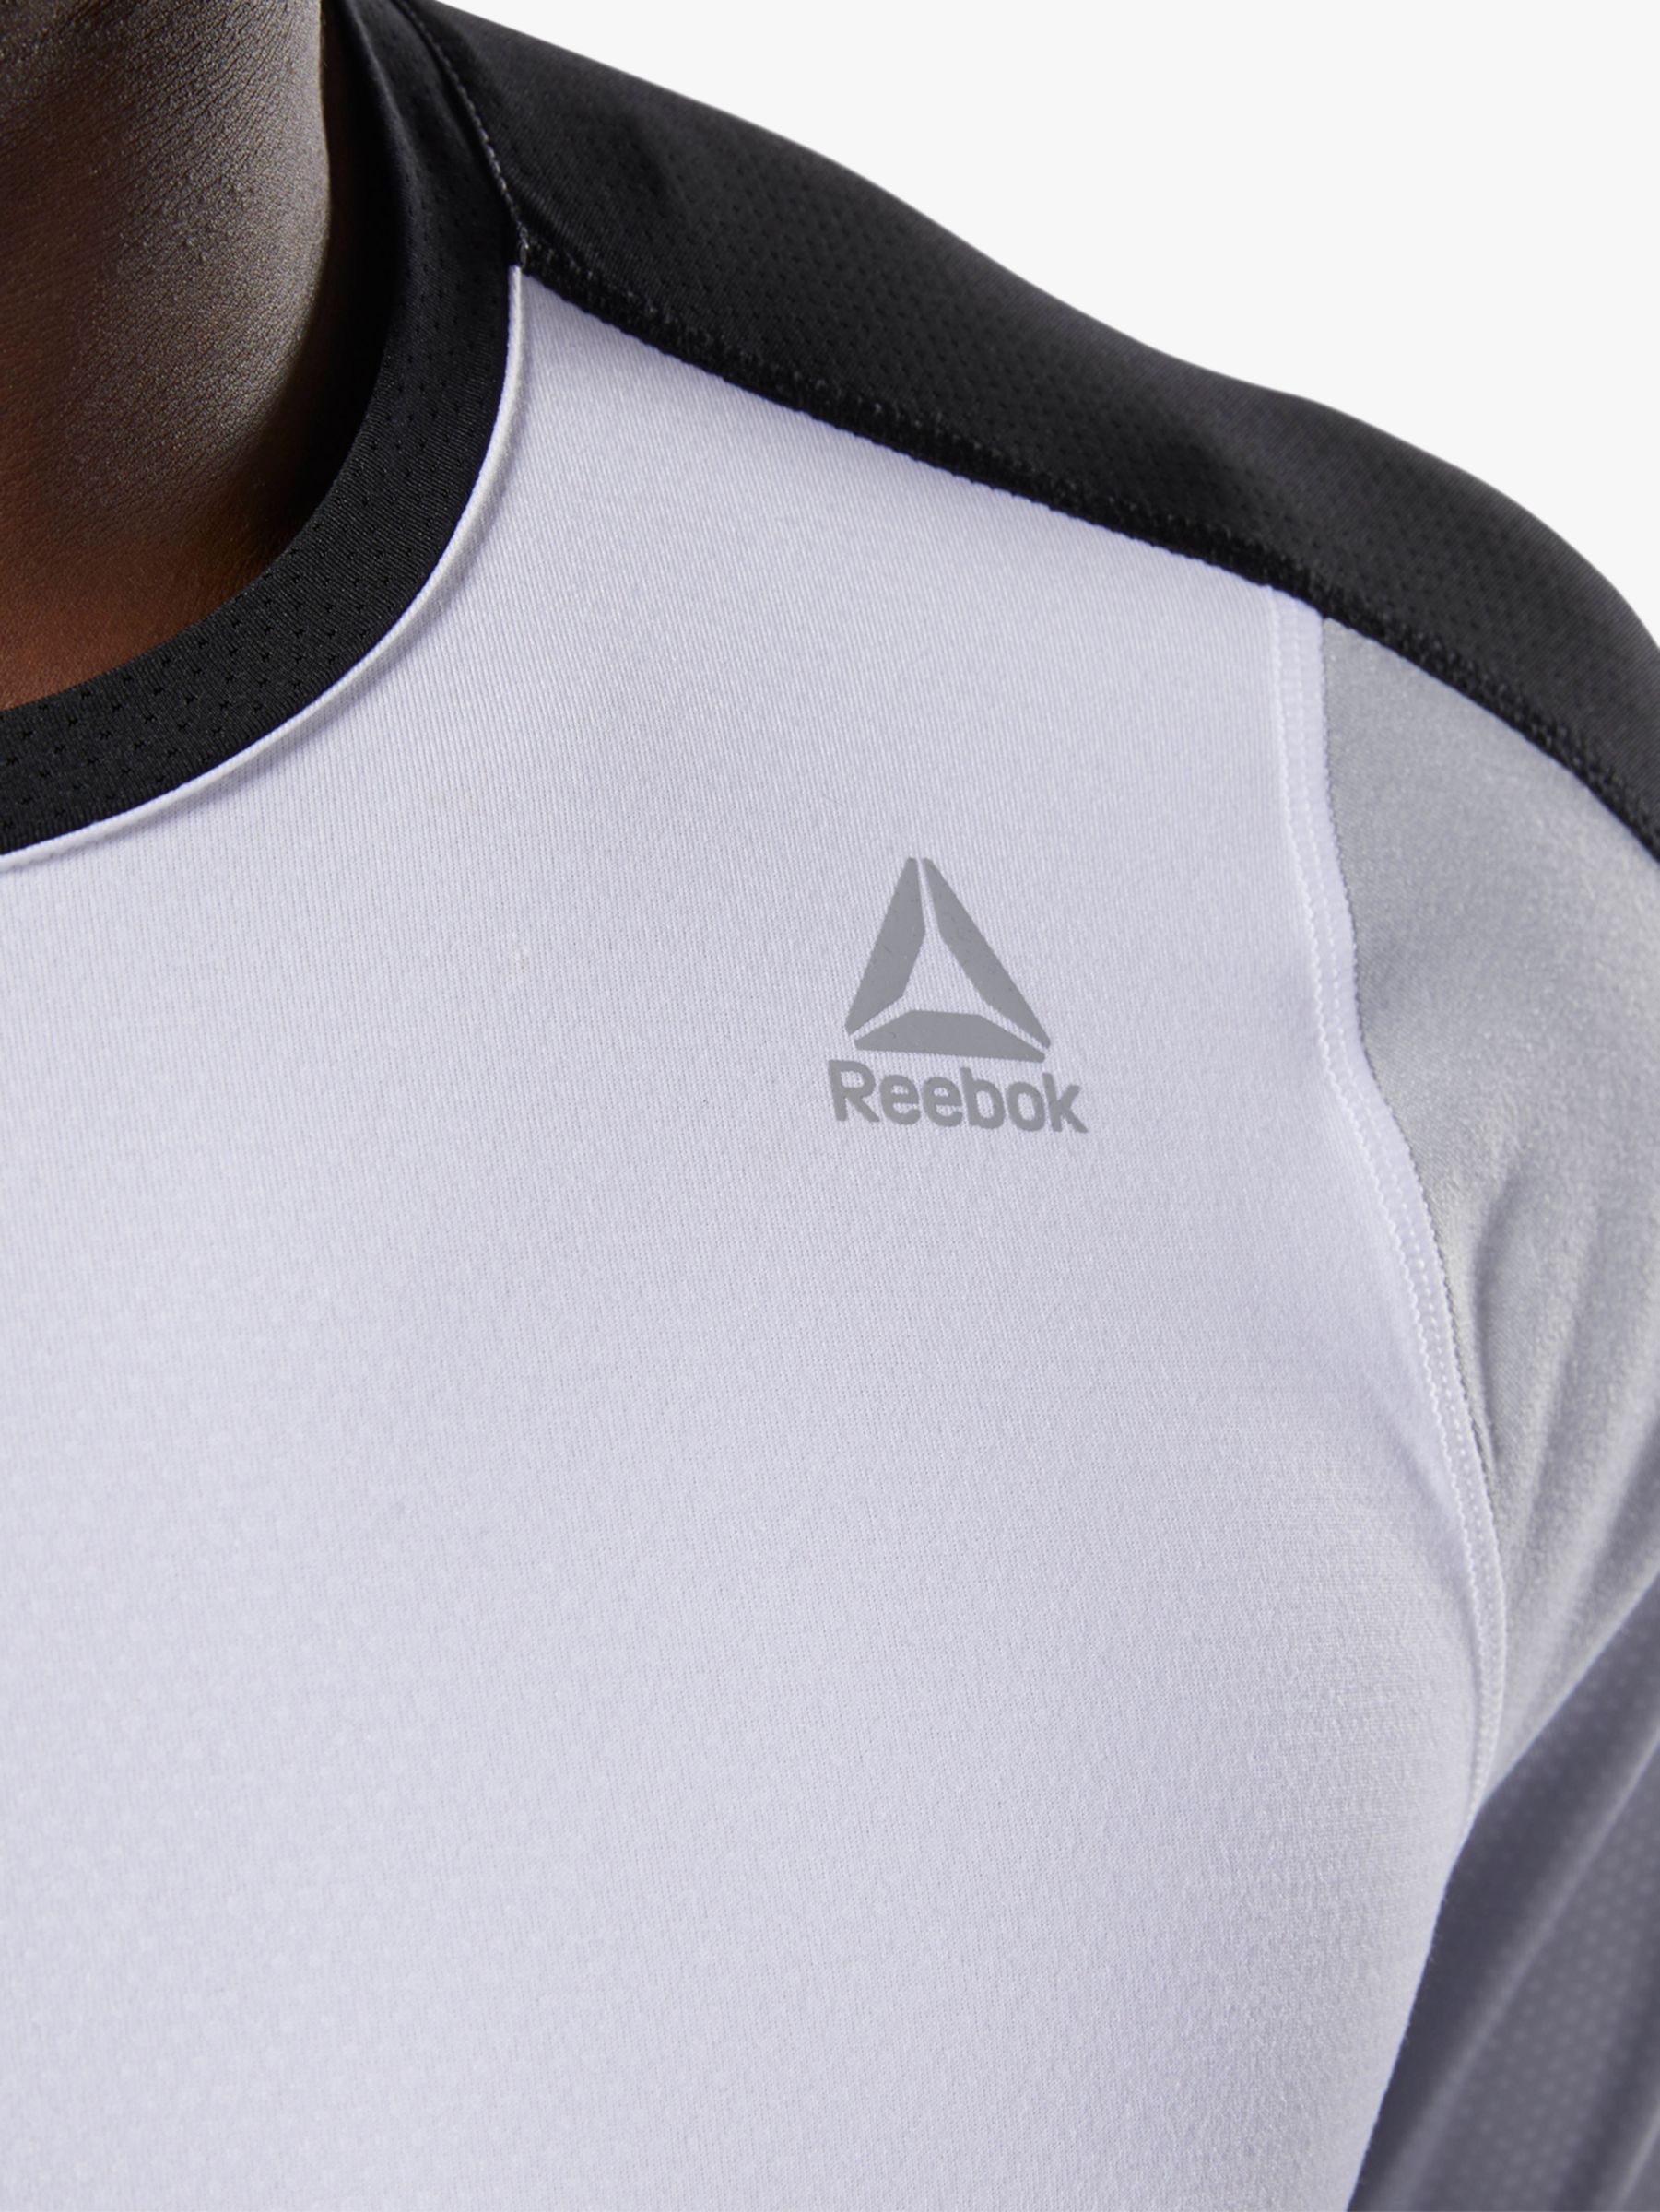 Reebok SmartVent Move Training T-Shirt, White at John Lewis \u0026 Partners